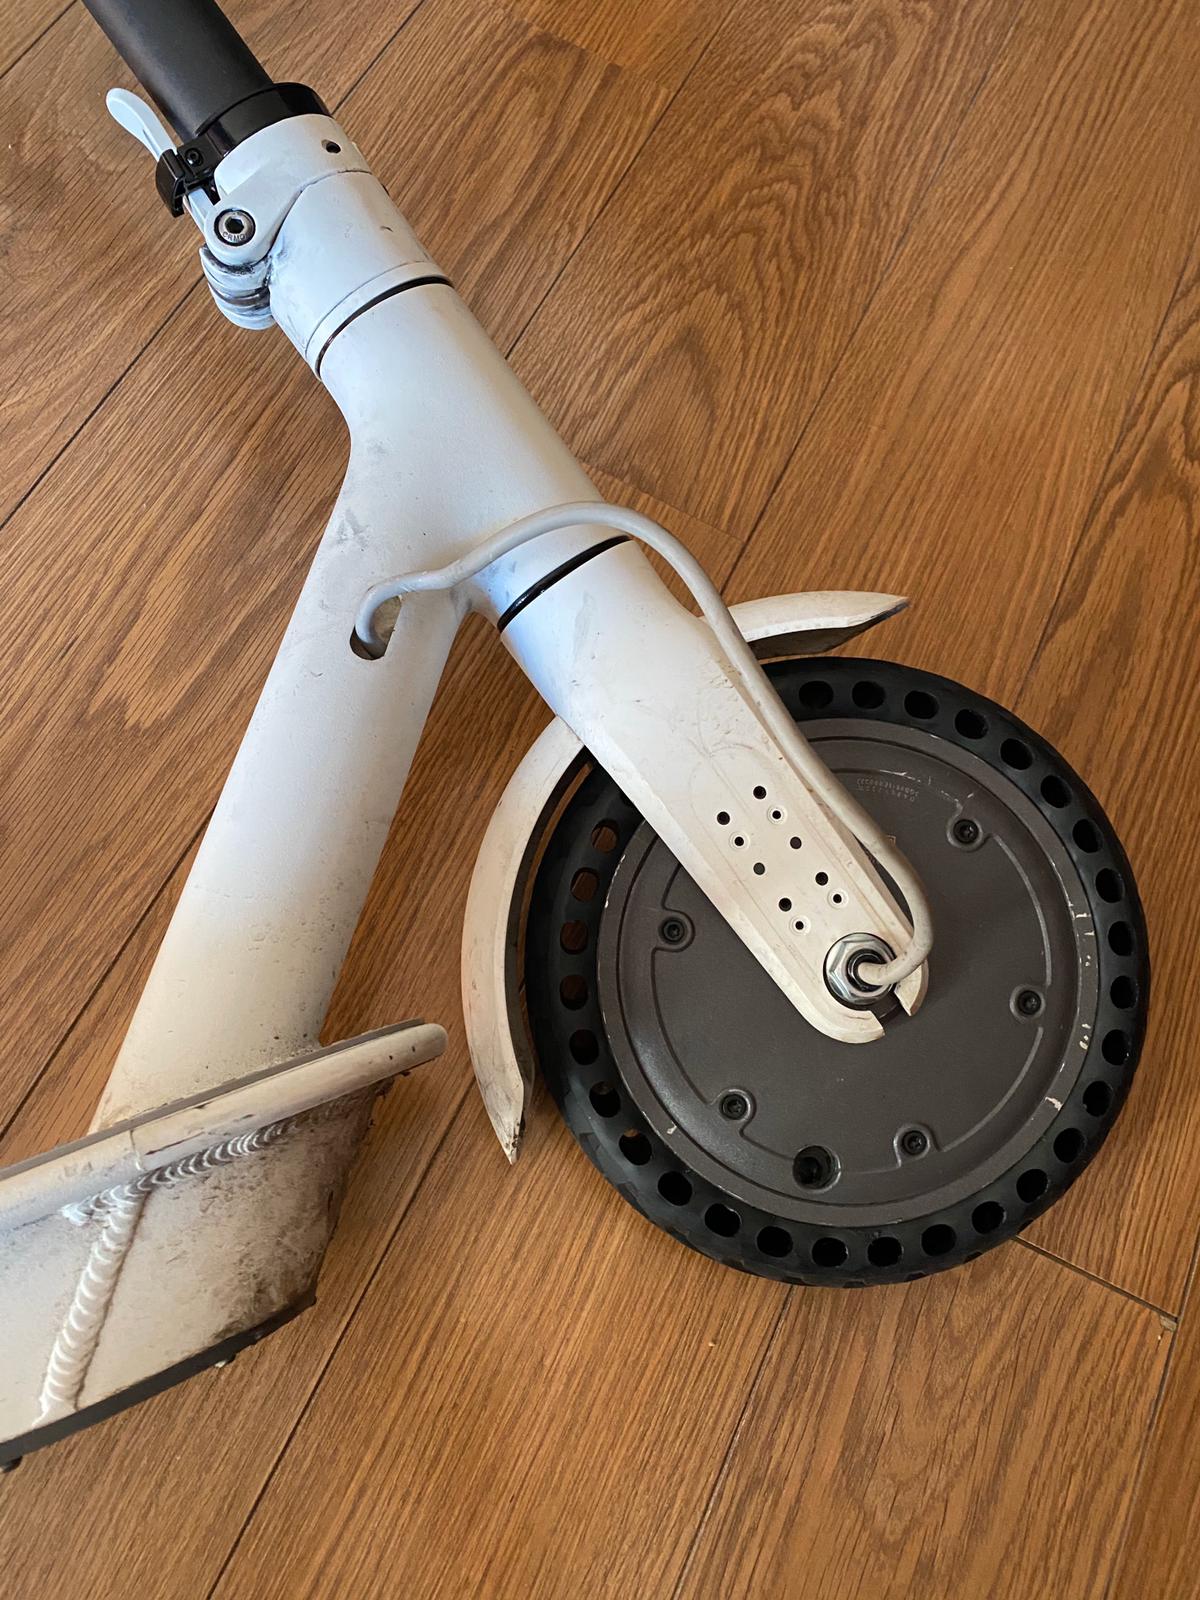 Cambiando la rueda del patinete eléctrico por una maciza con huecos a modo  de suspensión #Impresion3D? – Blog de @pablogarguez